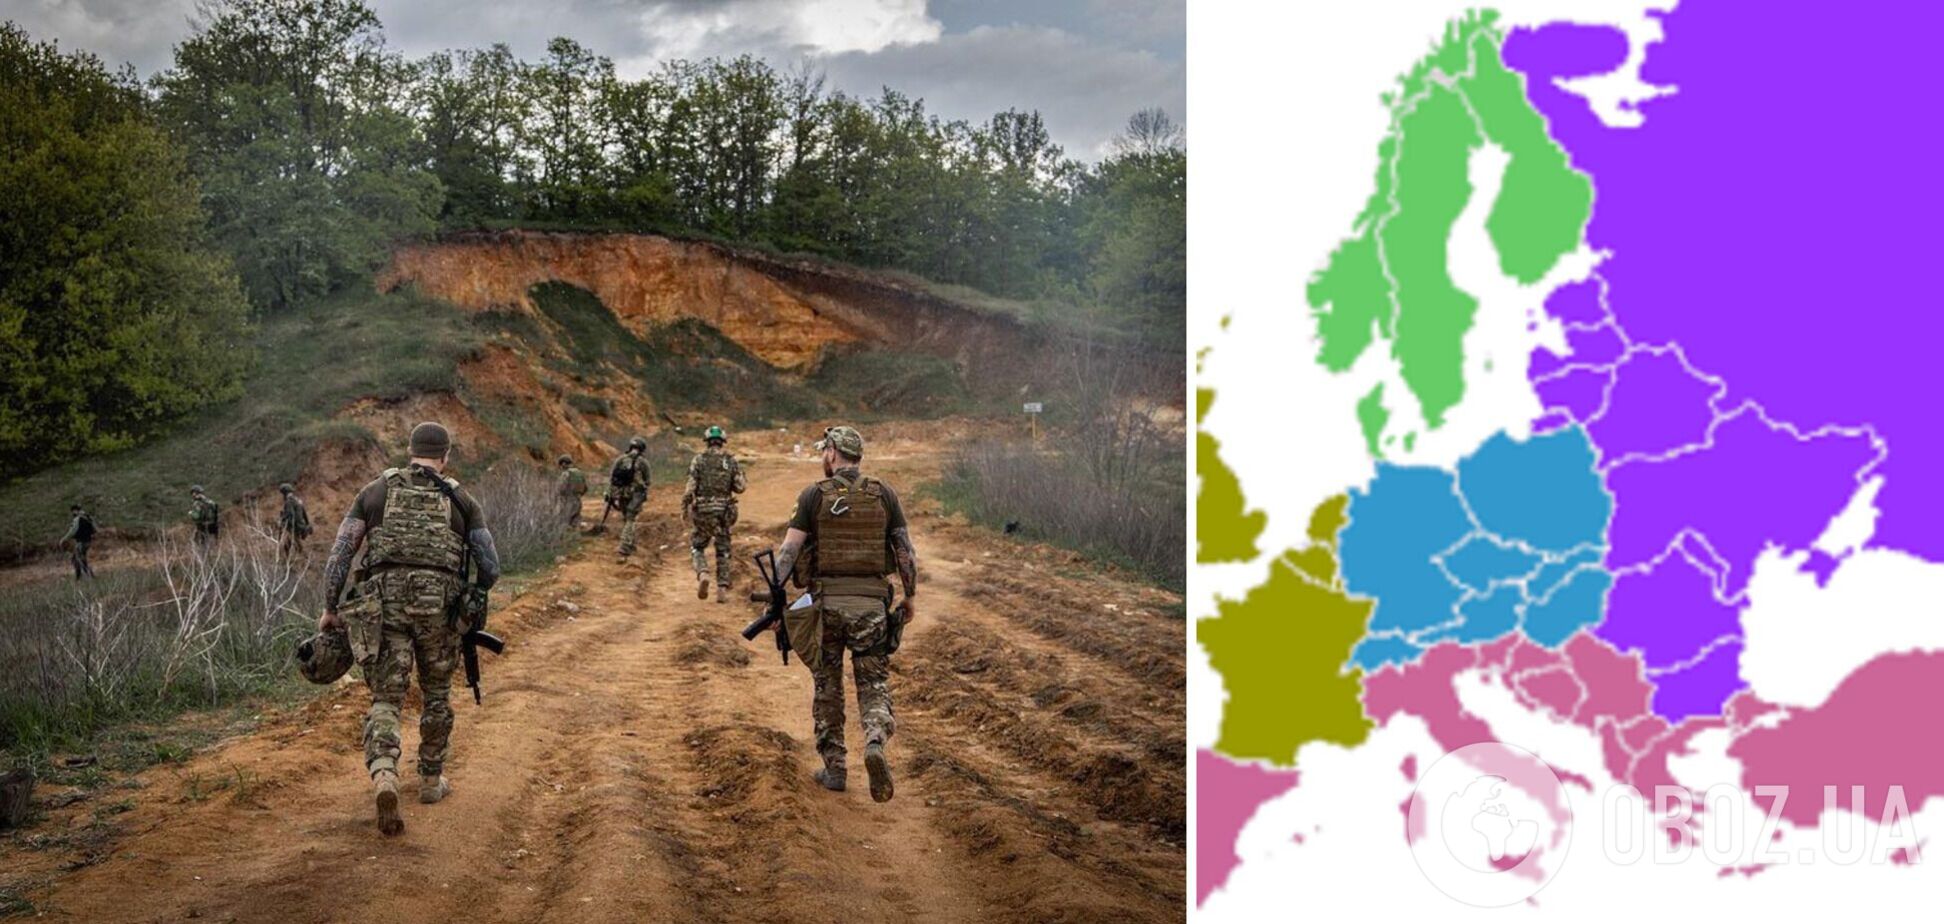 2450 км і чотири країни: лінію фронту в Україні показали на прикладі Європи. Інфографіка